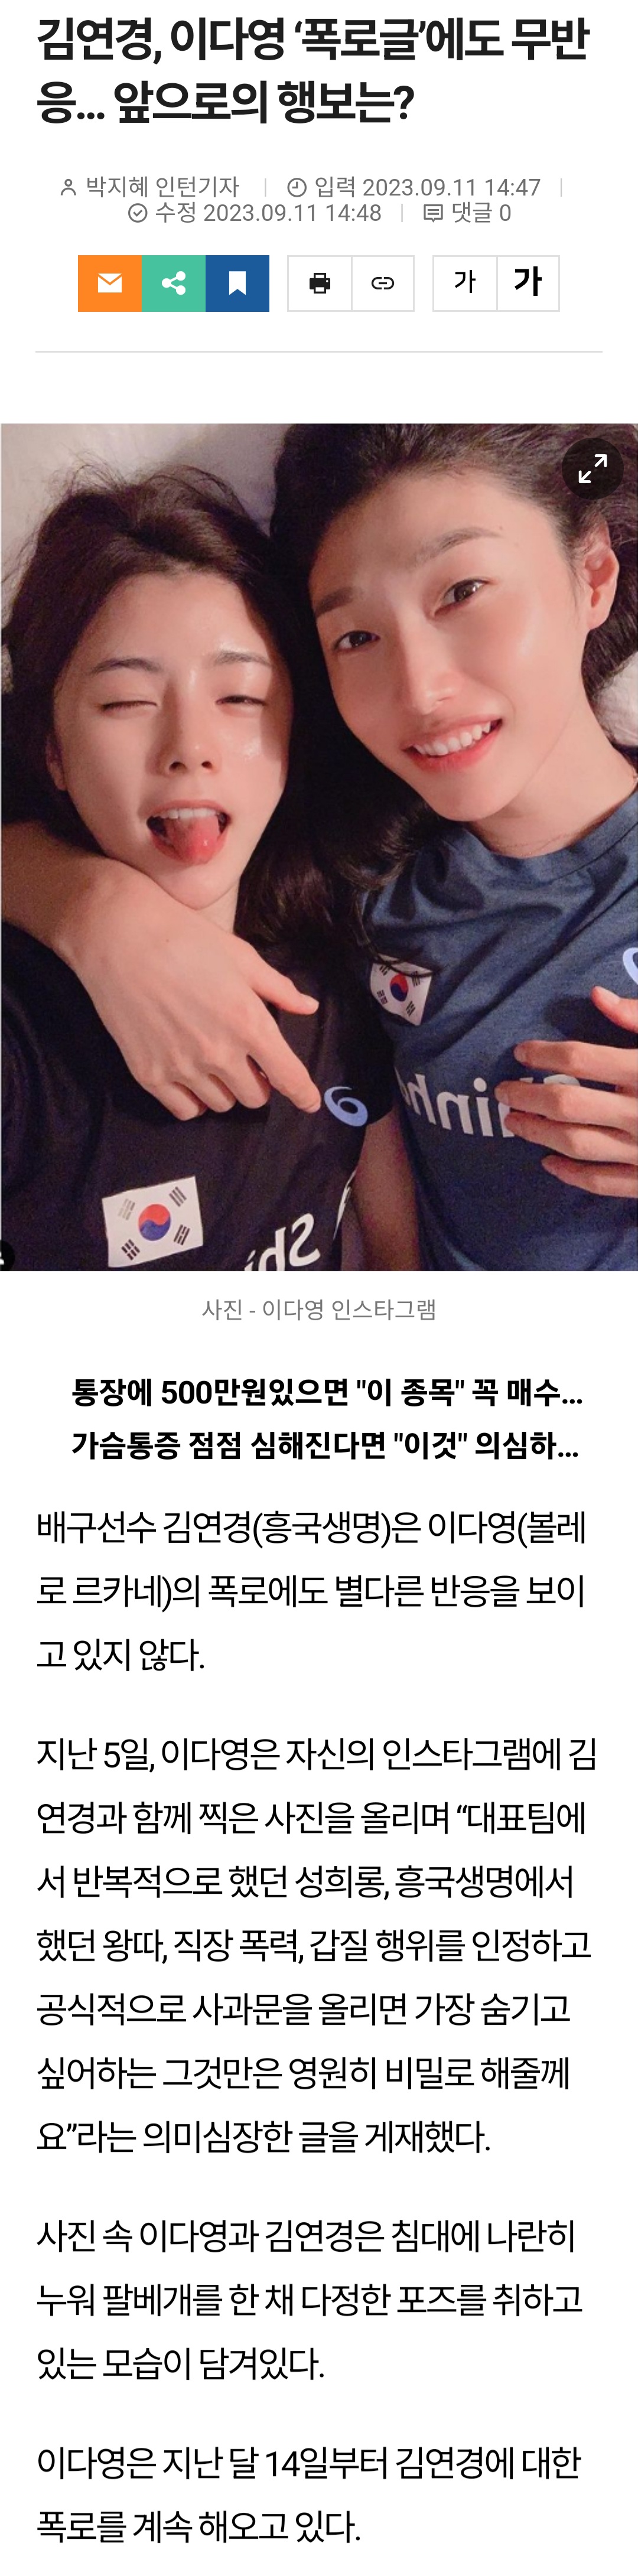 [정보/소식] 김연경, 이다영 '폭로글'에도 무반응... 앞으로의 행보는? | 인스티즈